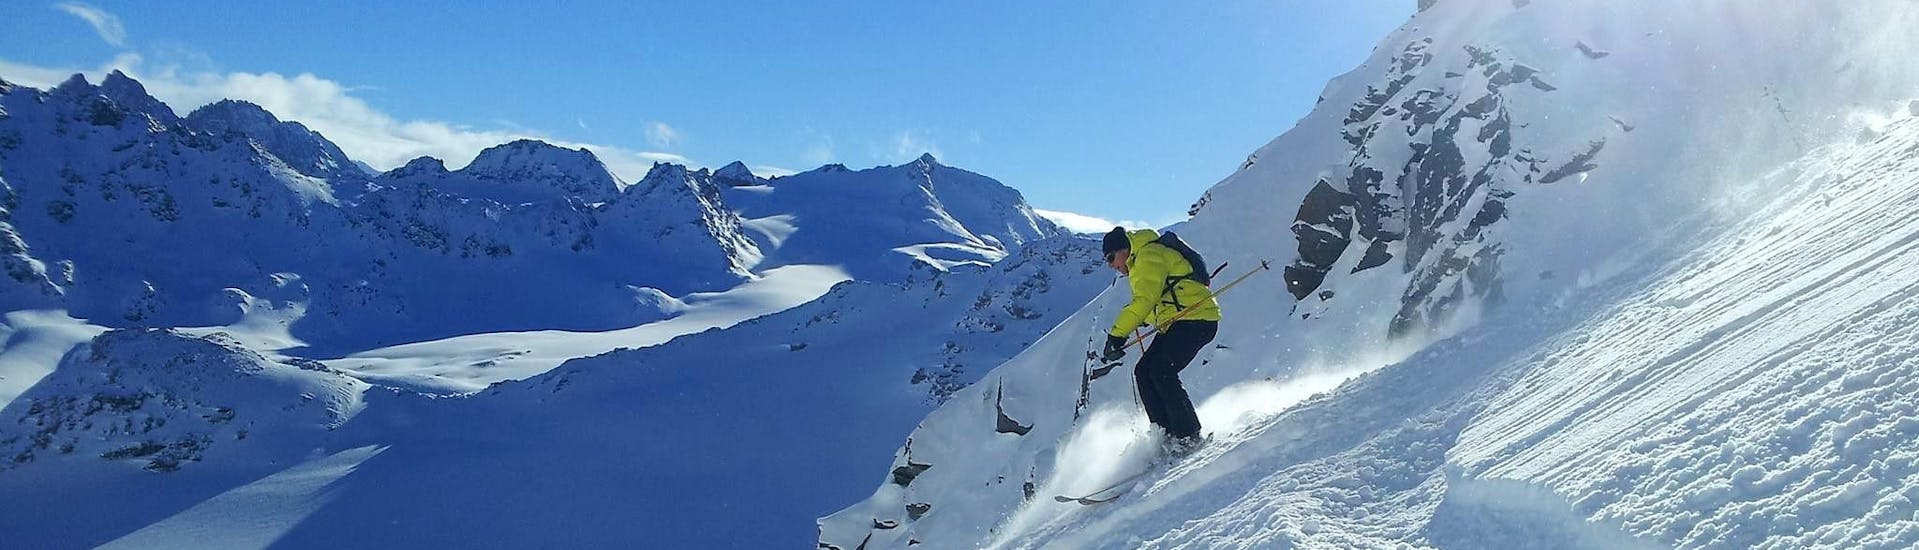 Privé skilessen voor volwassenen voor beginners.